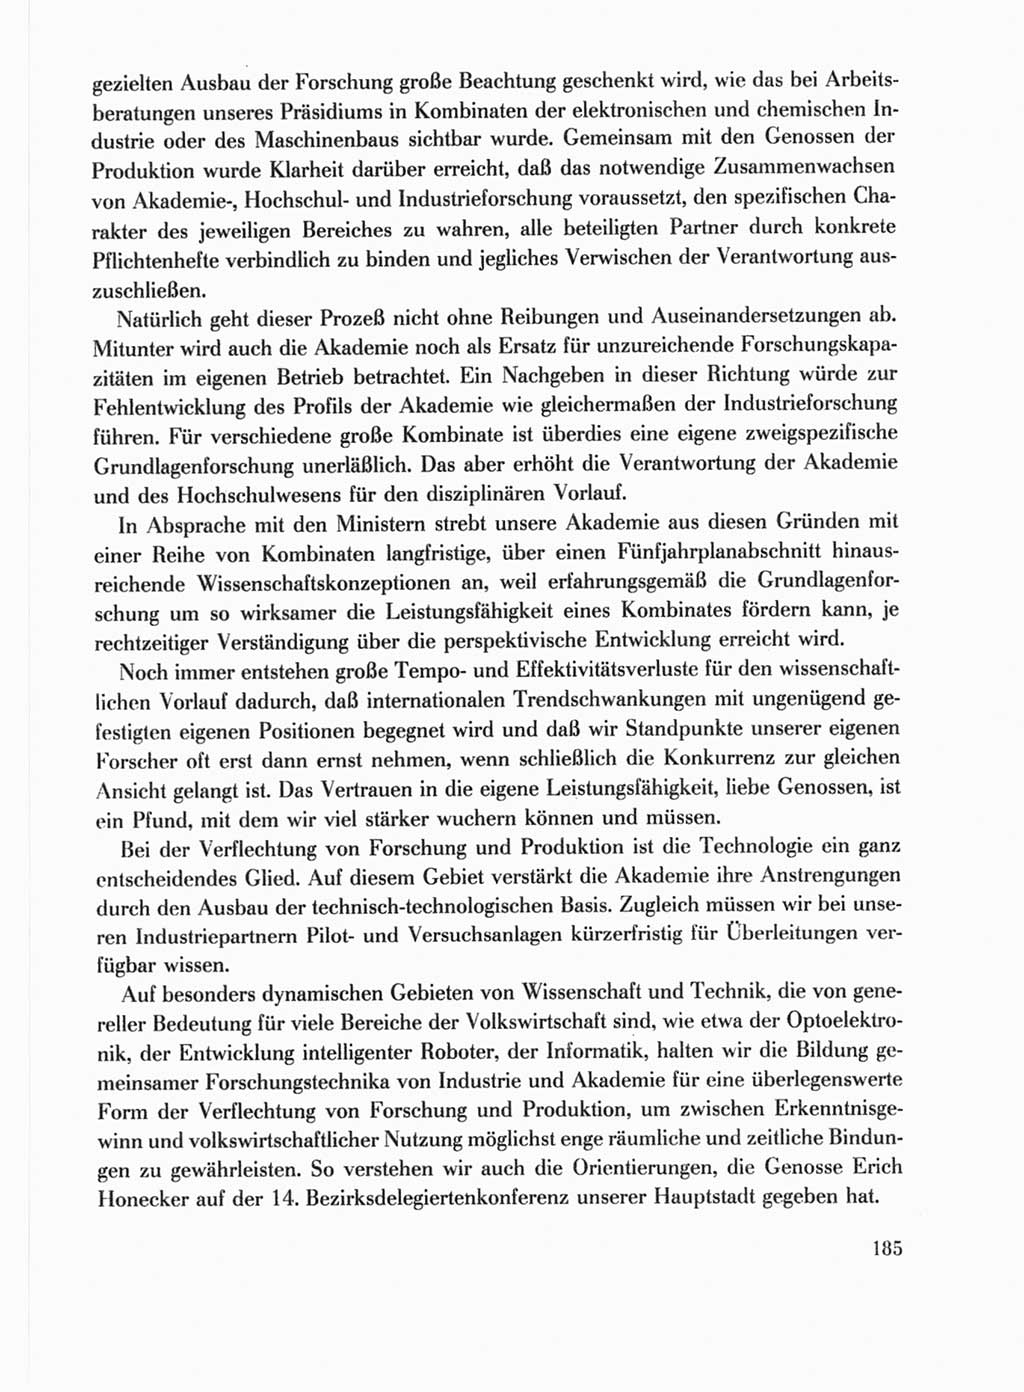 Protokoll der Verhandlungen des Ⅹ. Parteitages der Sozialistischen Einheitspartei Deutschlands (SED) [Deutsche Demokratische Republik (DDR)] 1981, Band 1, Seite 185 (Prot. Verh. Ⅹ. PT SED DDR 1981, Bd. 1, S. 185)